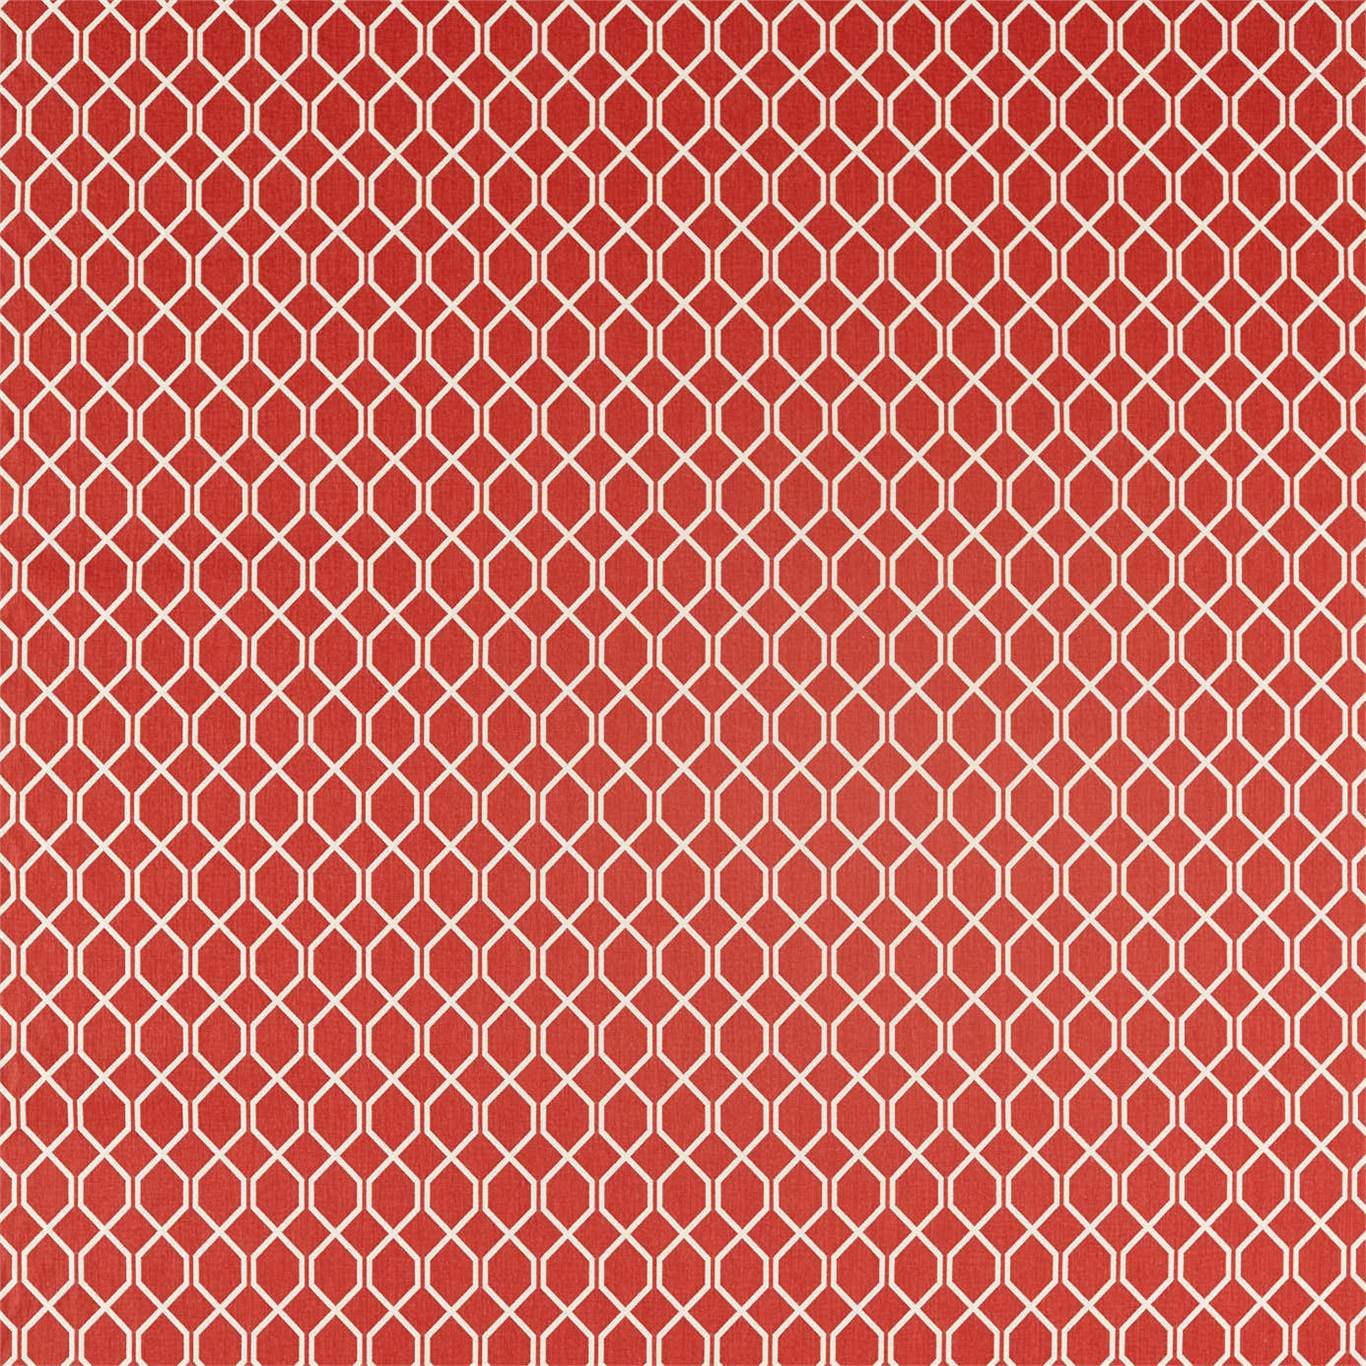 Botanic Trellis Bengal Red Fabric by SAN